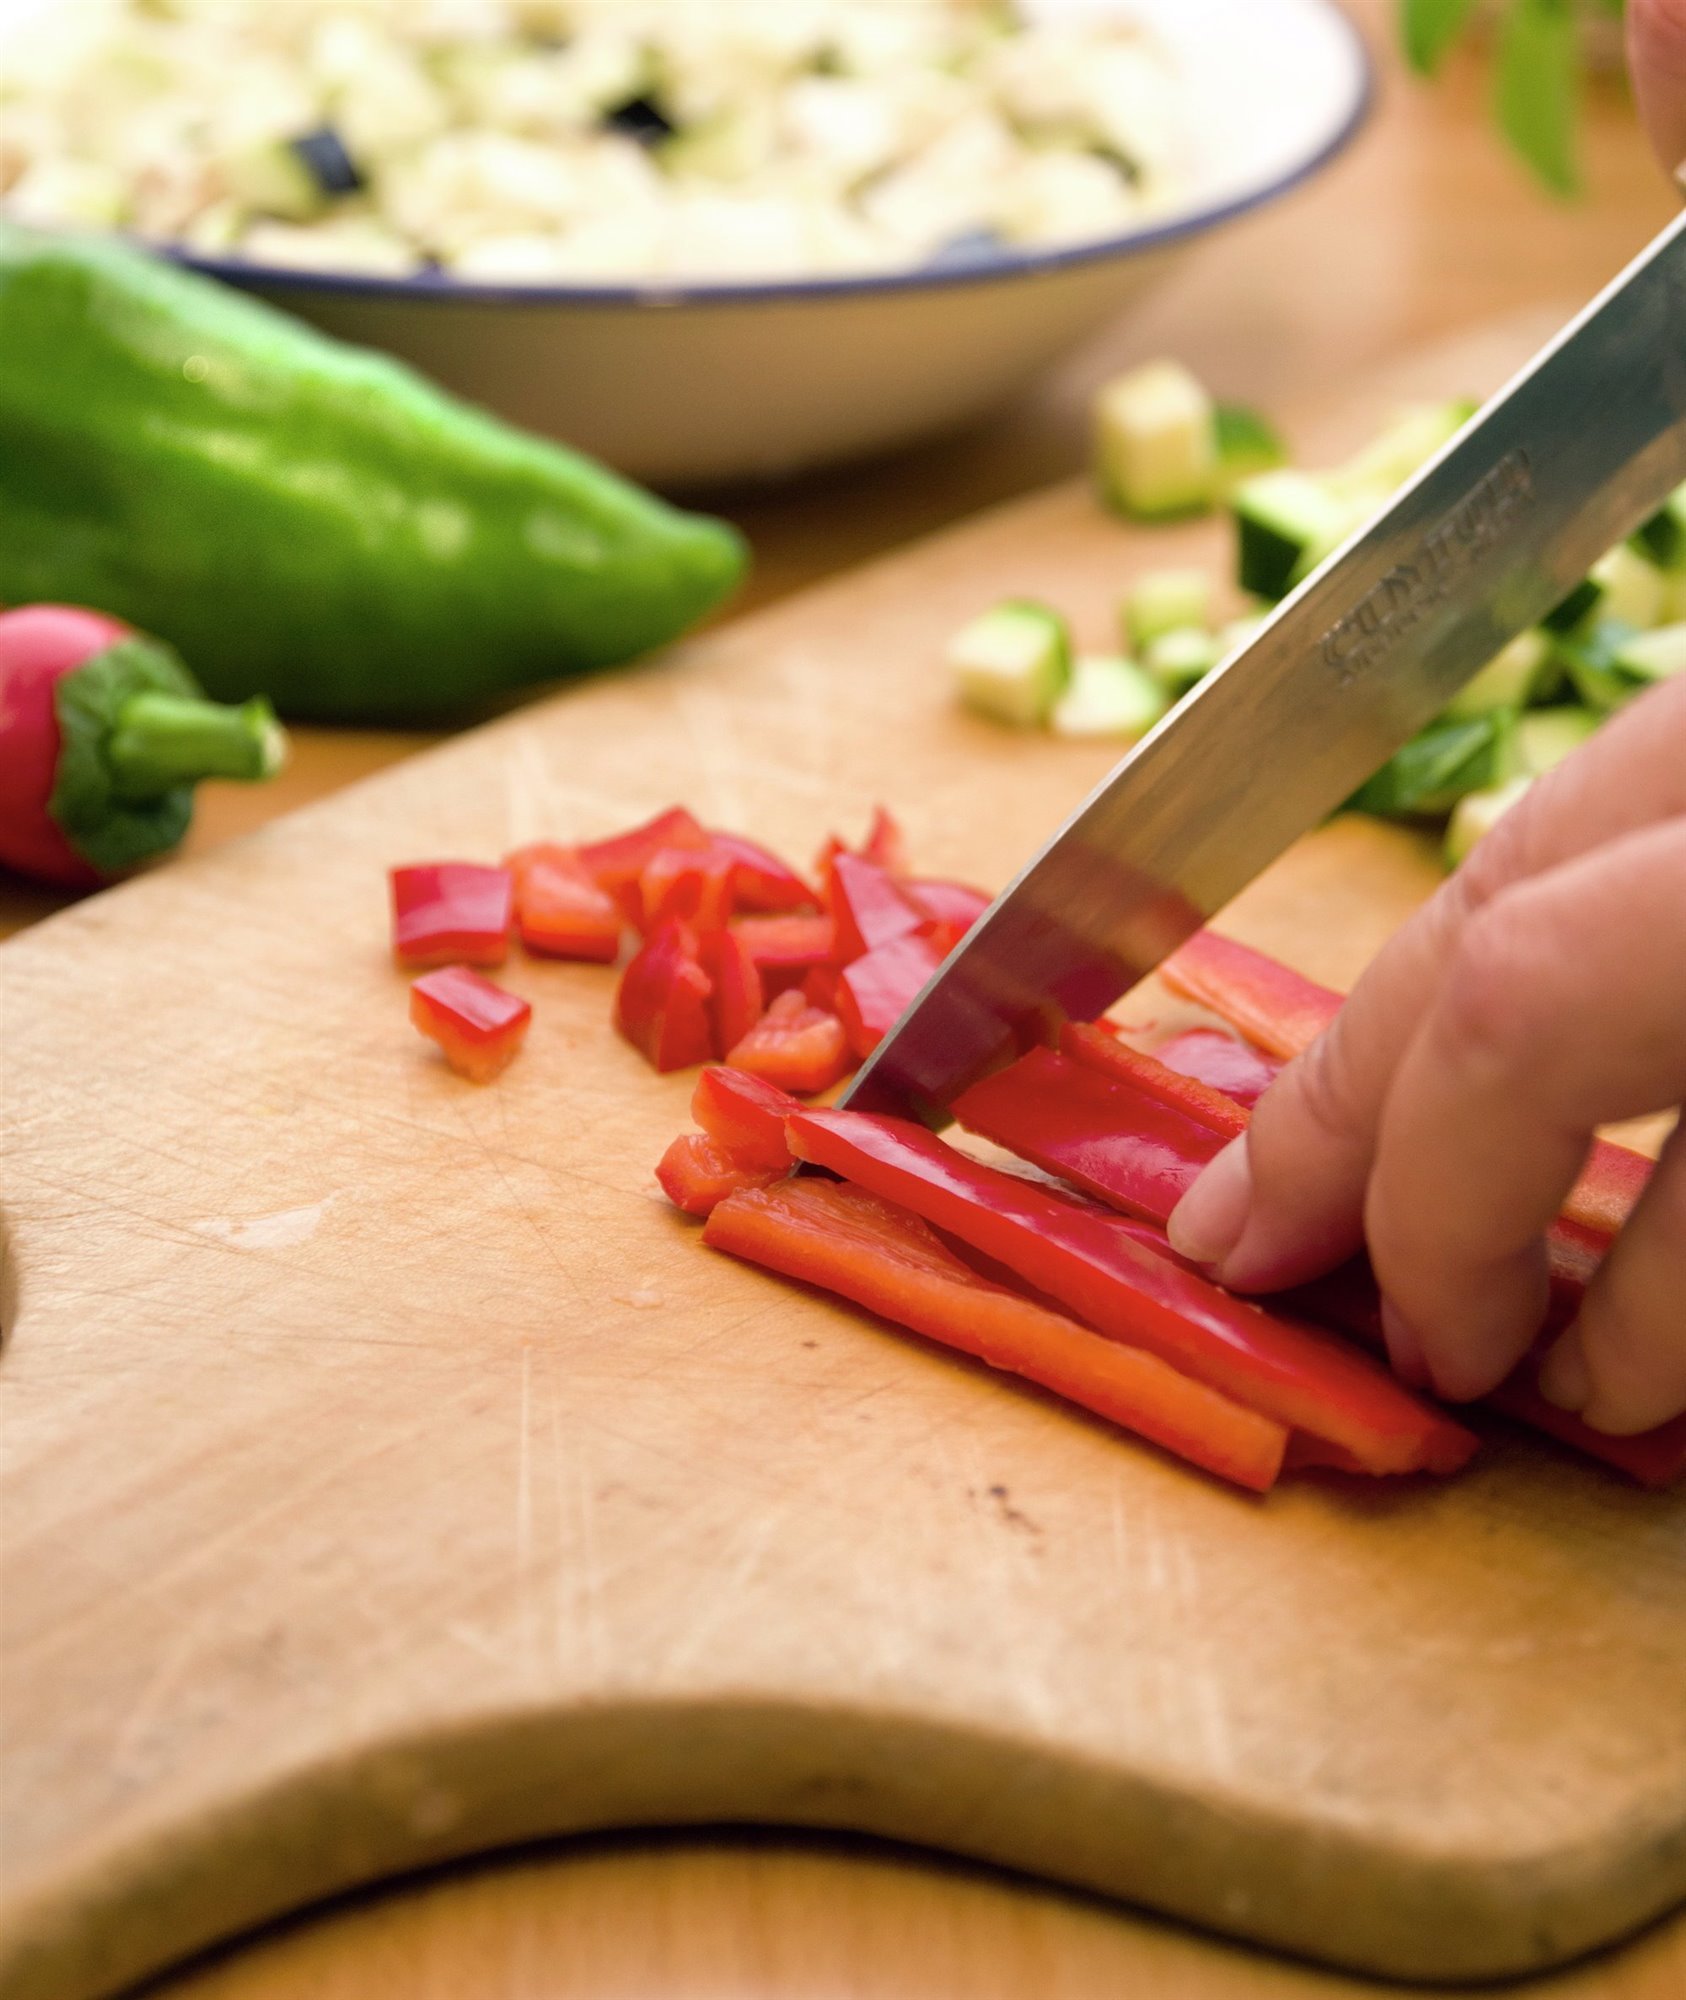 2. Corta las verduras en daditos